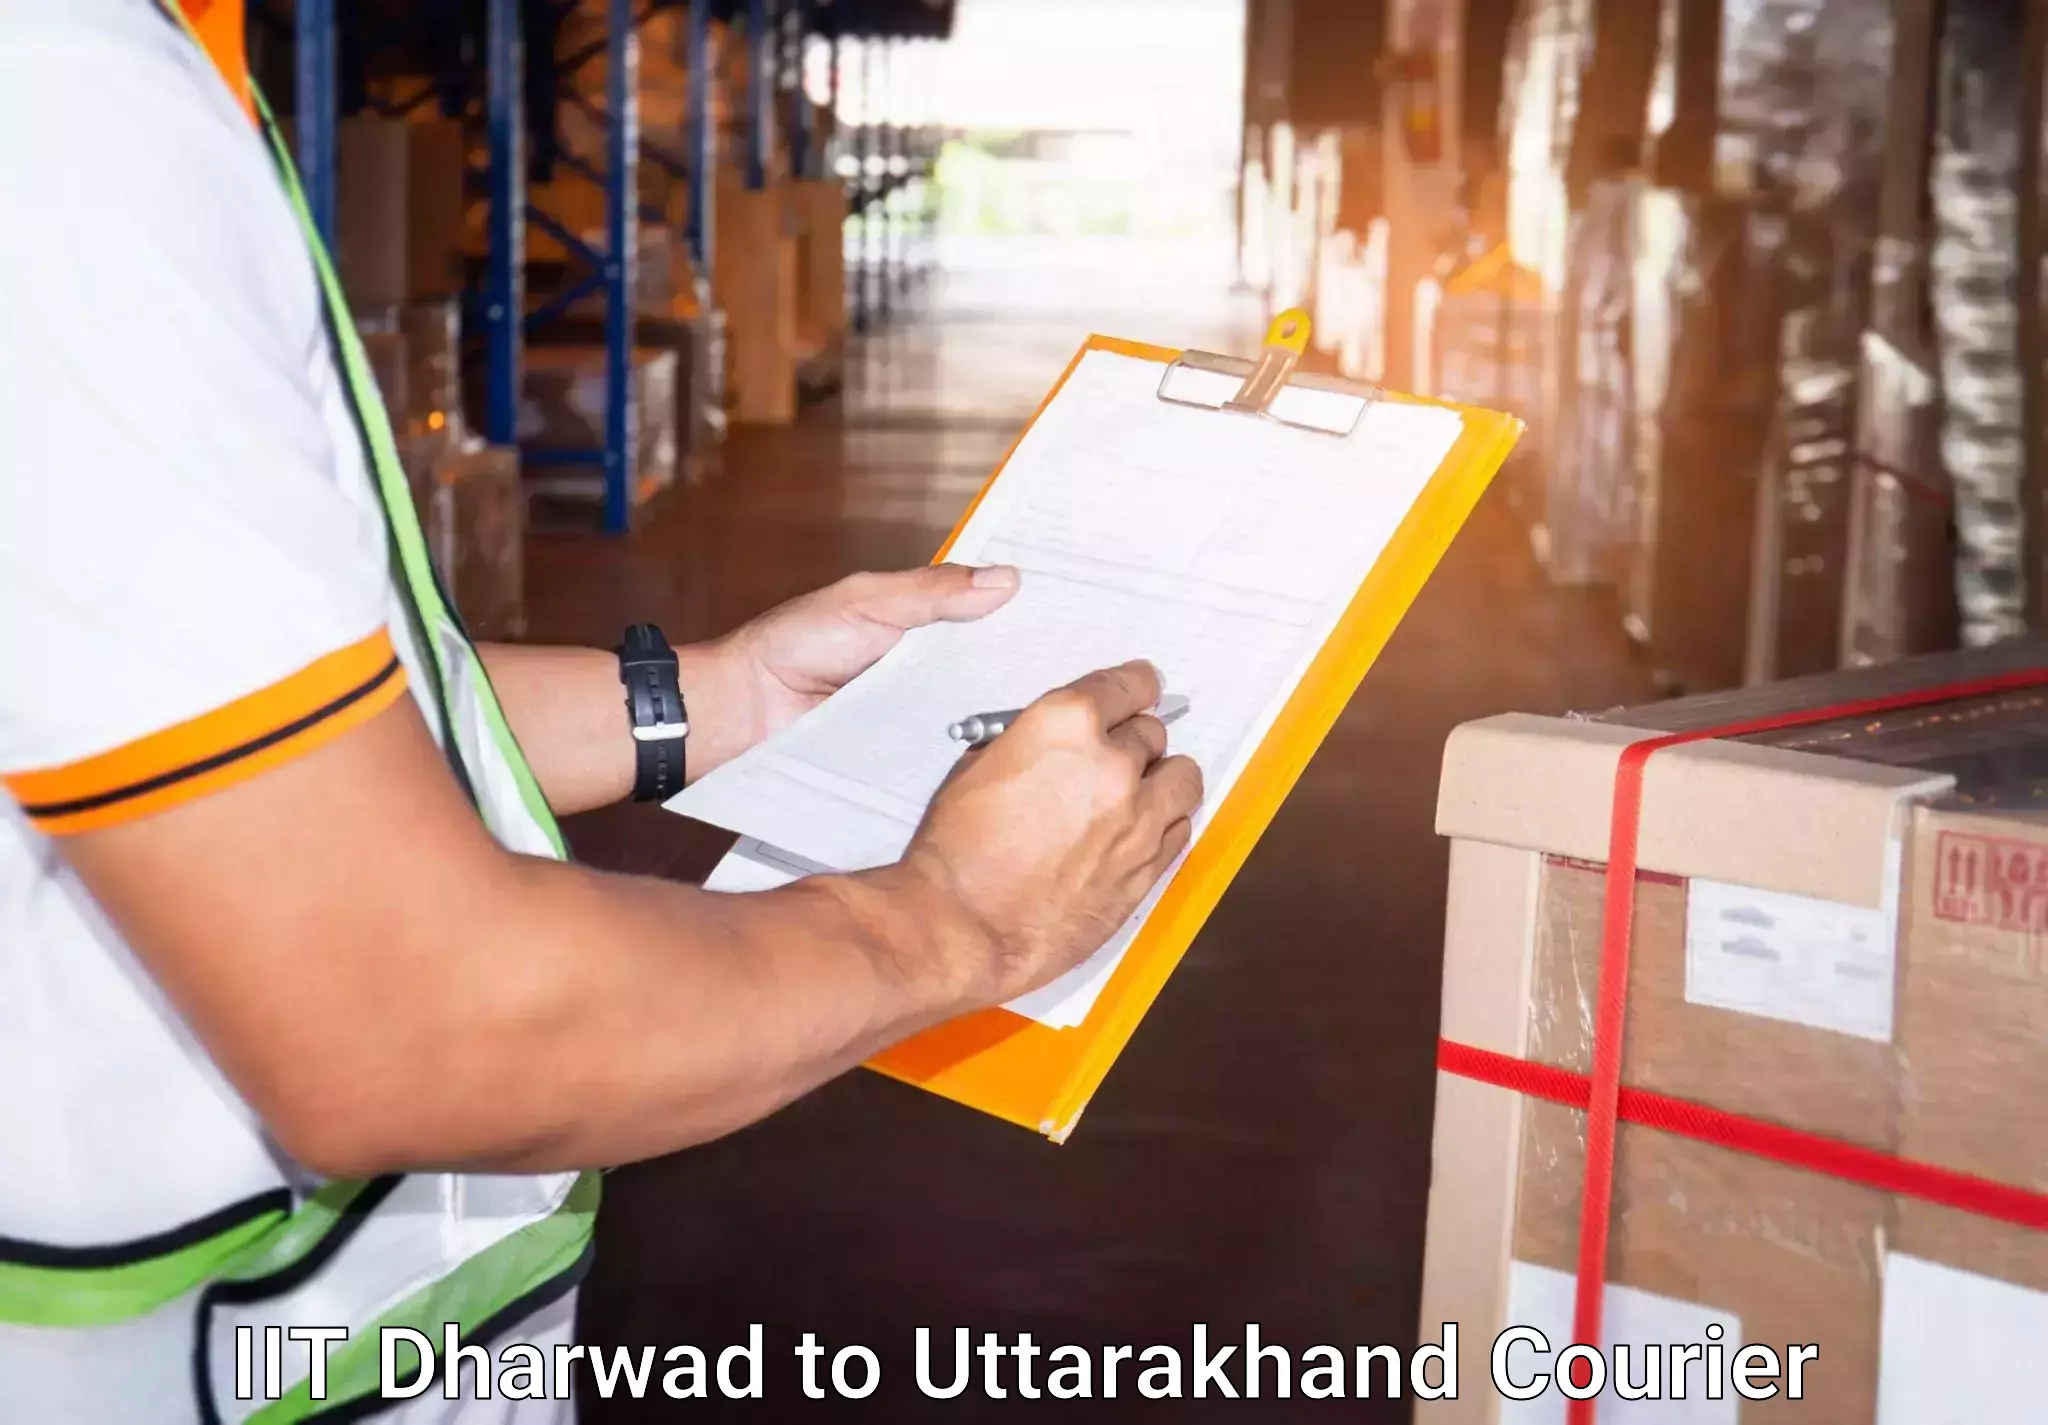 Luggage shipping options IIT Dharwad to IIT Roorkee